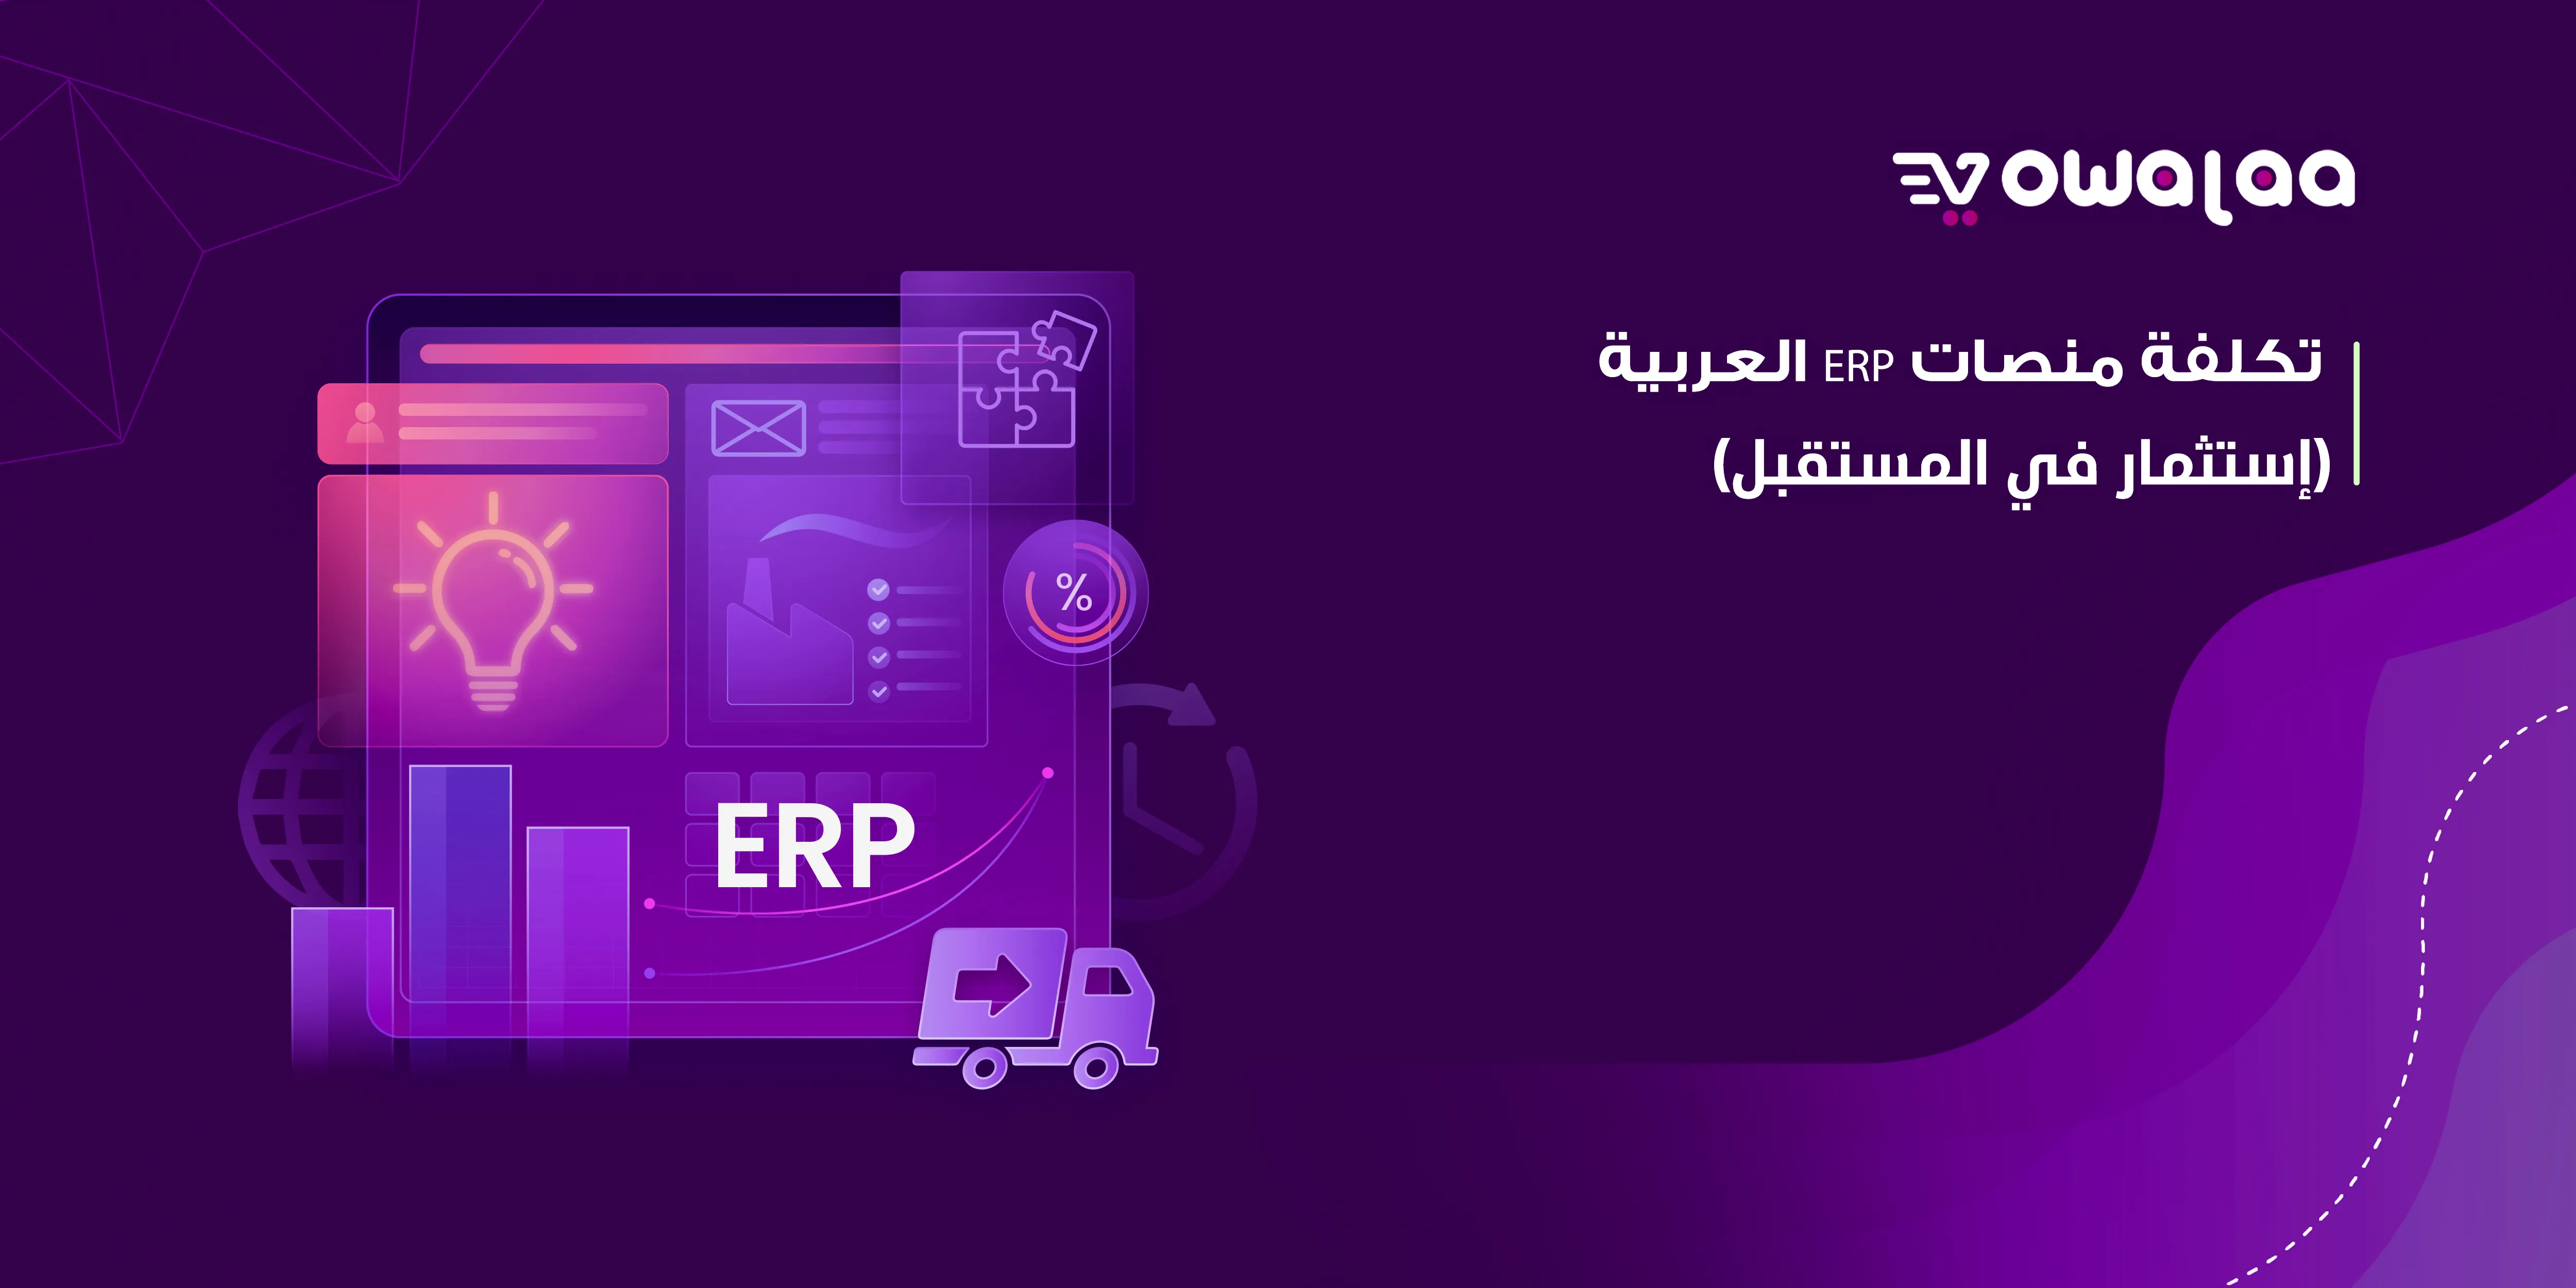 تكلفة منصات ERP العربية (إستثمار في المستقبل)